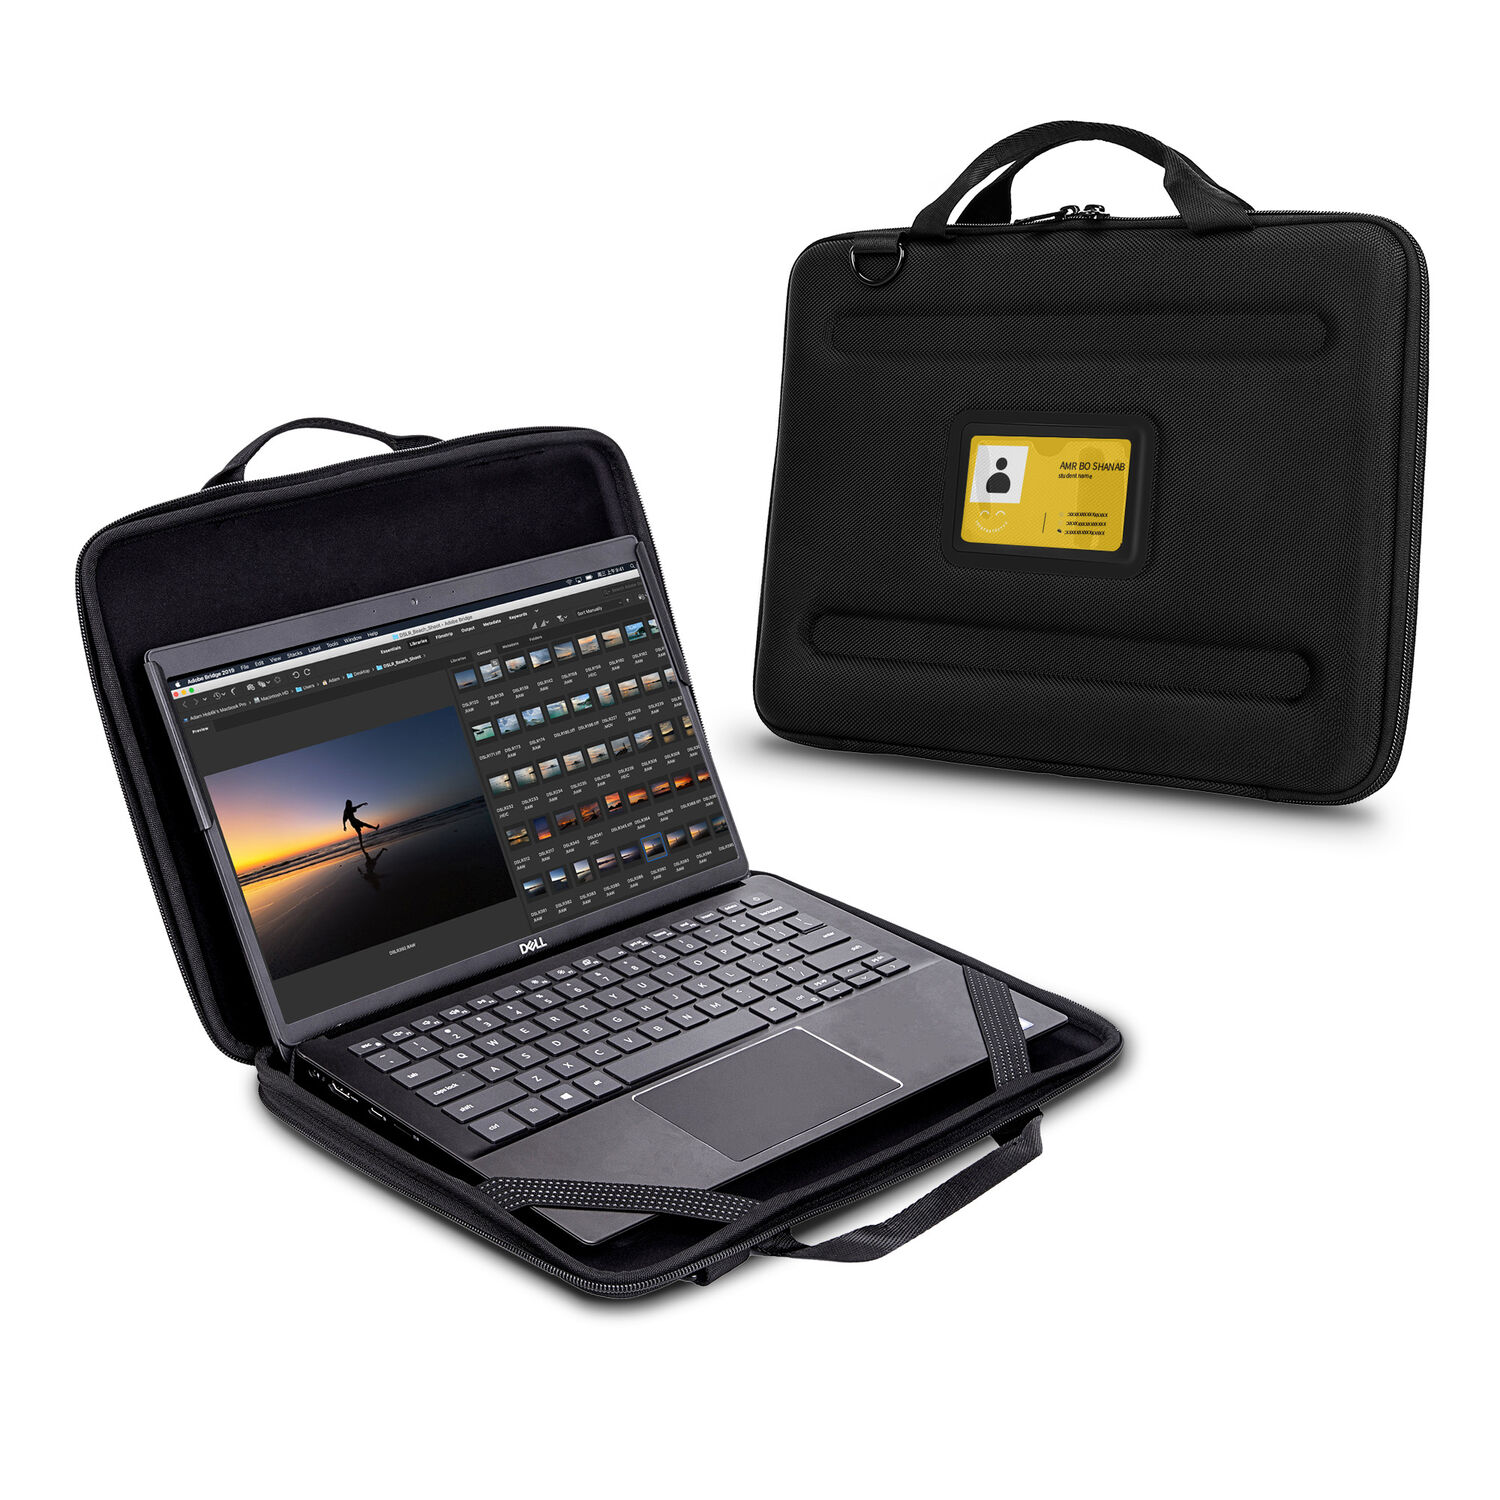 Funda de Transporte Techprotectus para Laptop y Chromebook de 11.6 13 con Bolsillo Incorporado